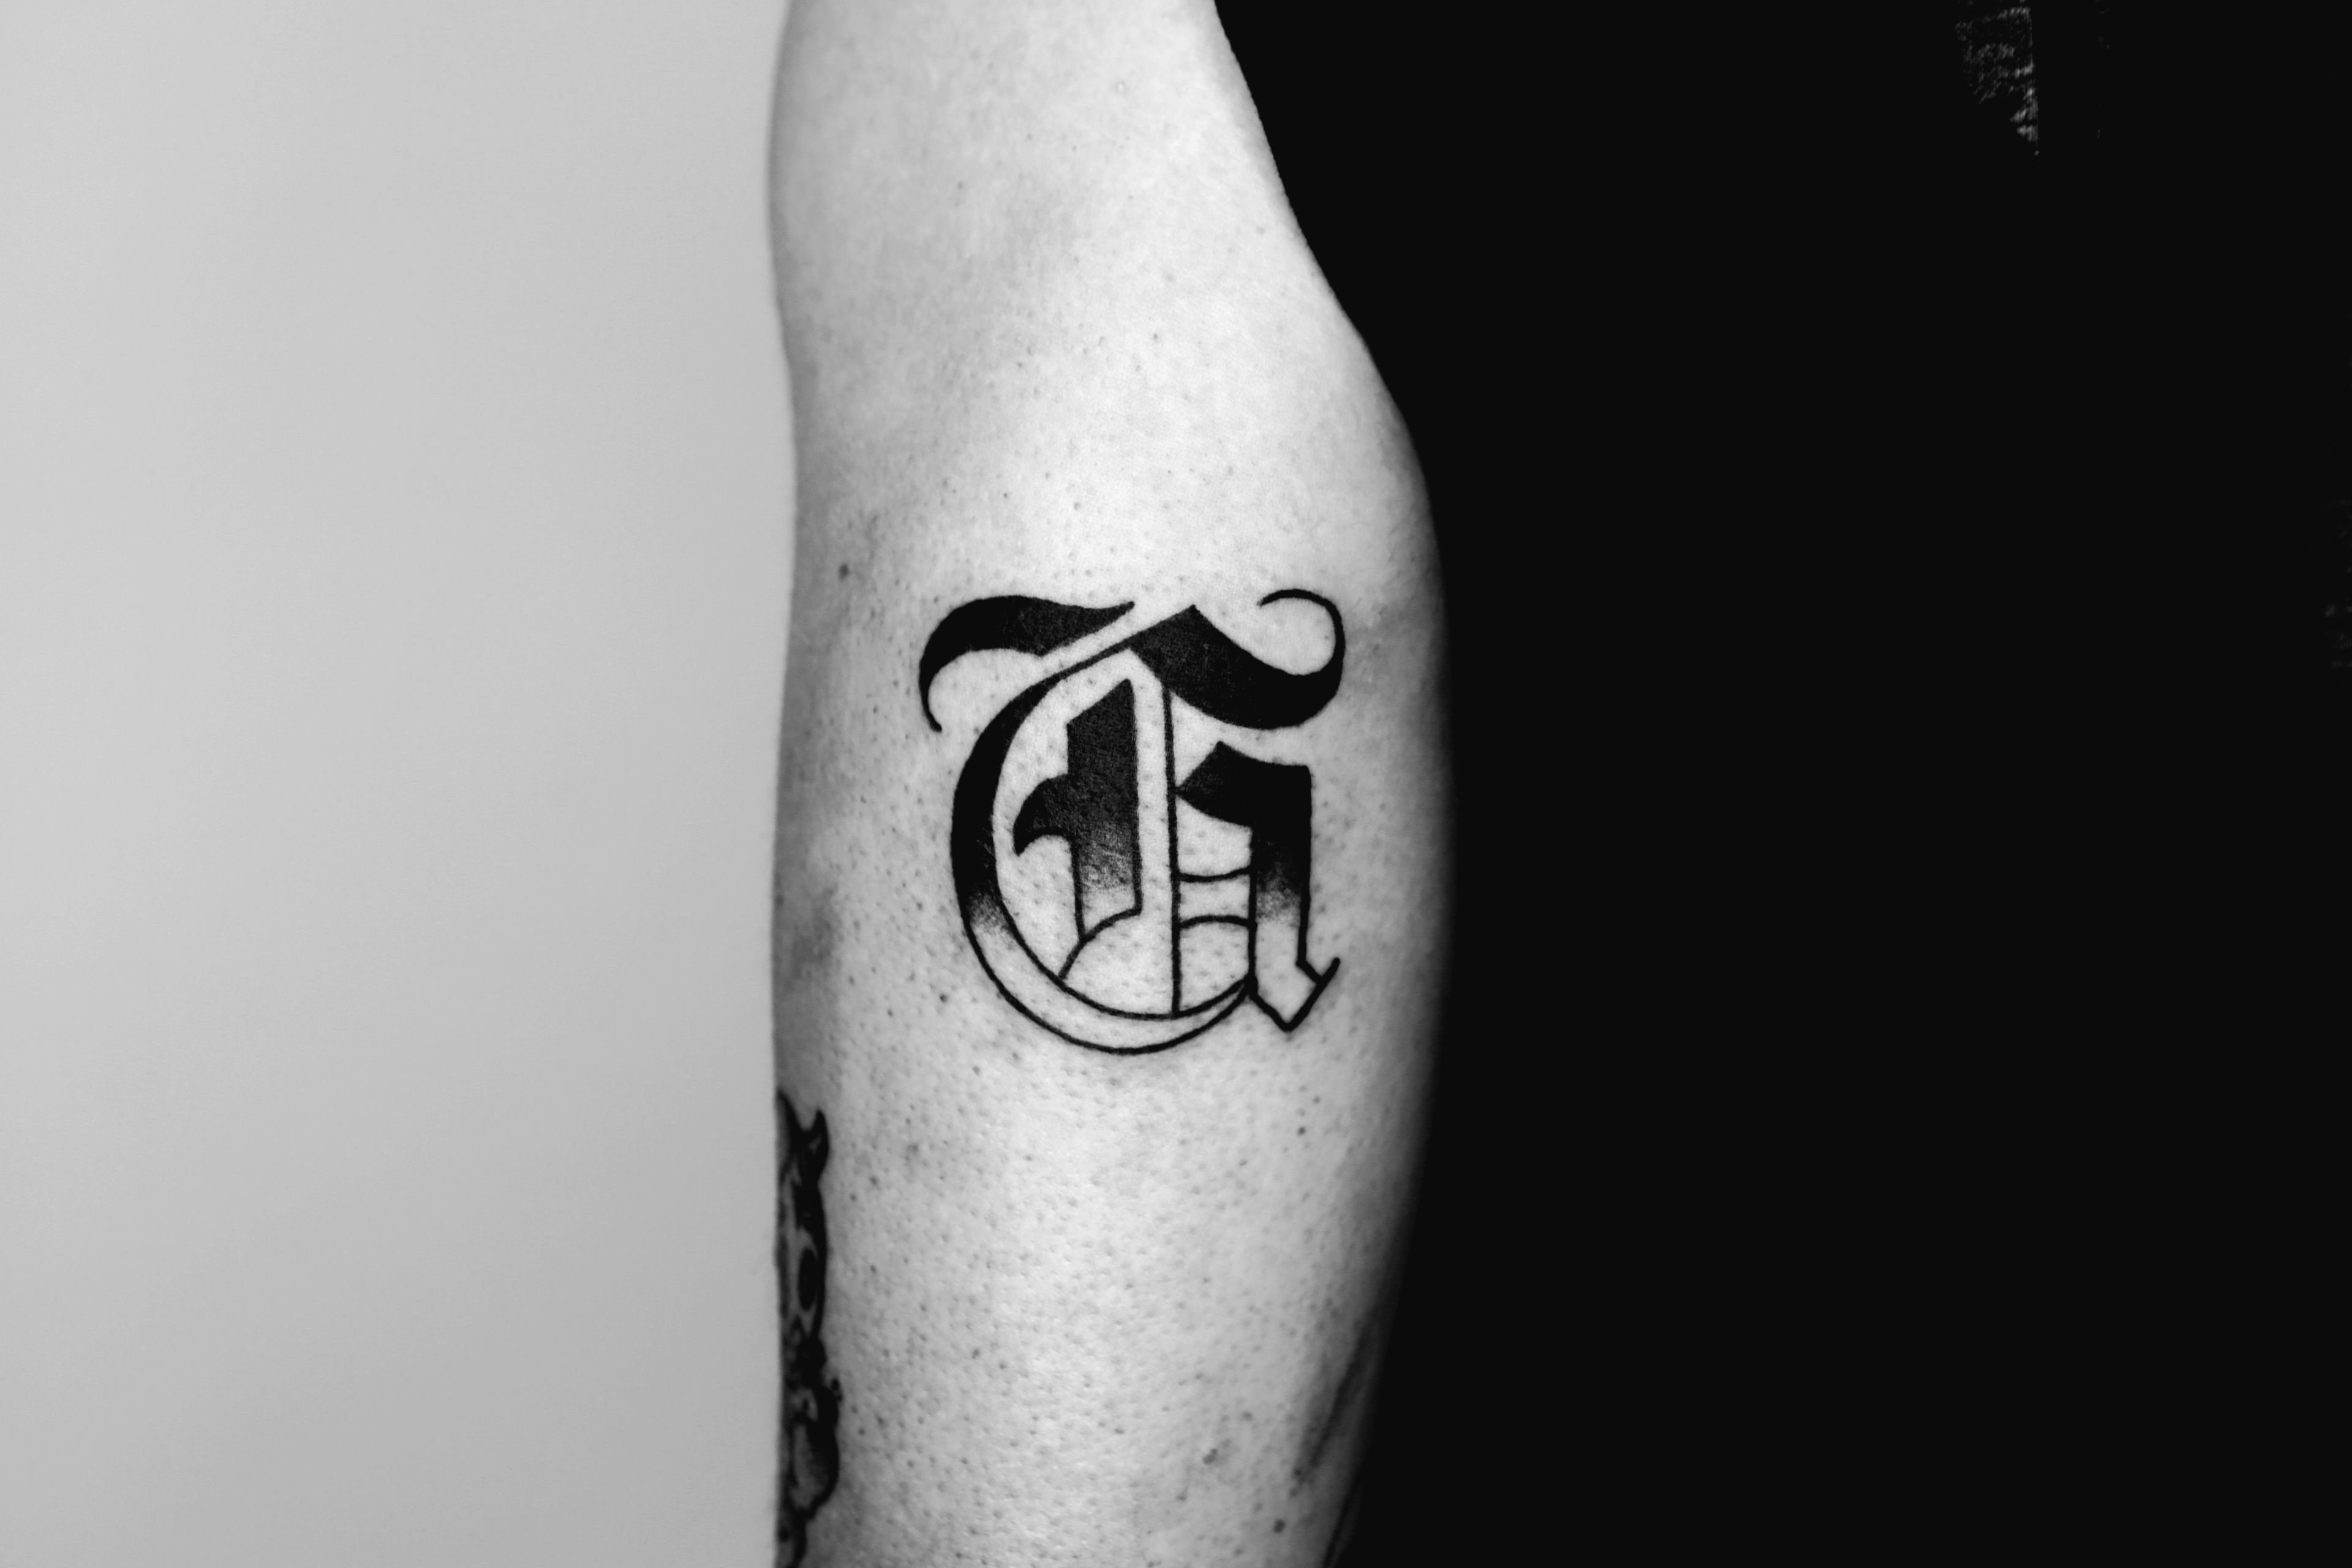 Letter G | Letter g tattoo, G tattoo, Letter g